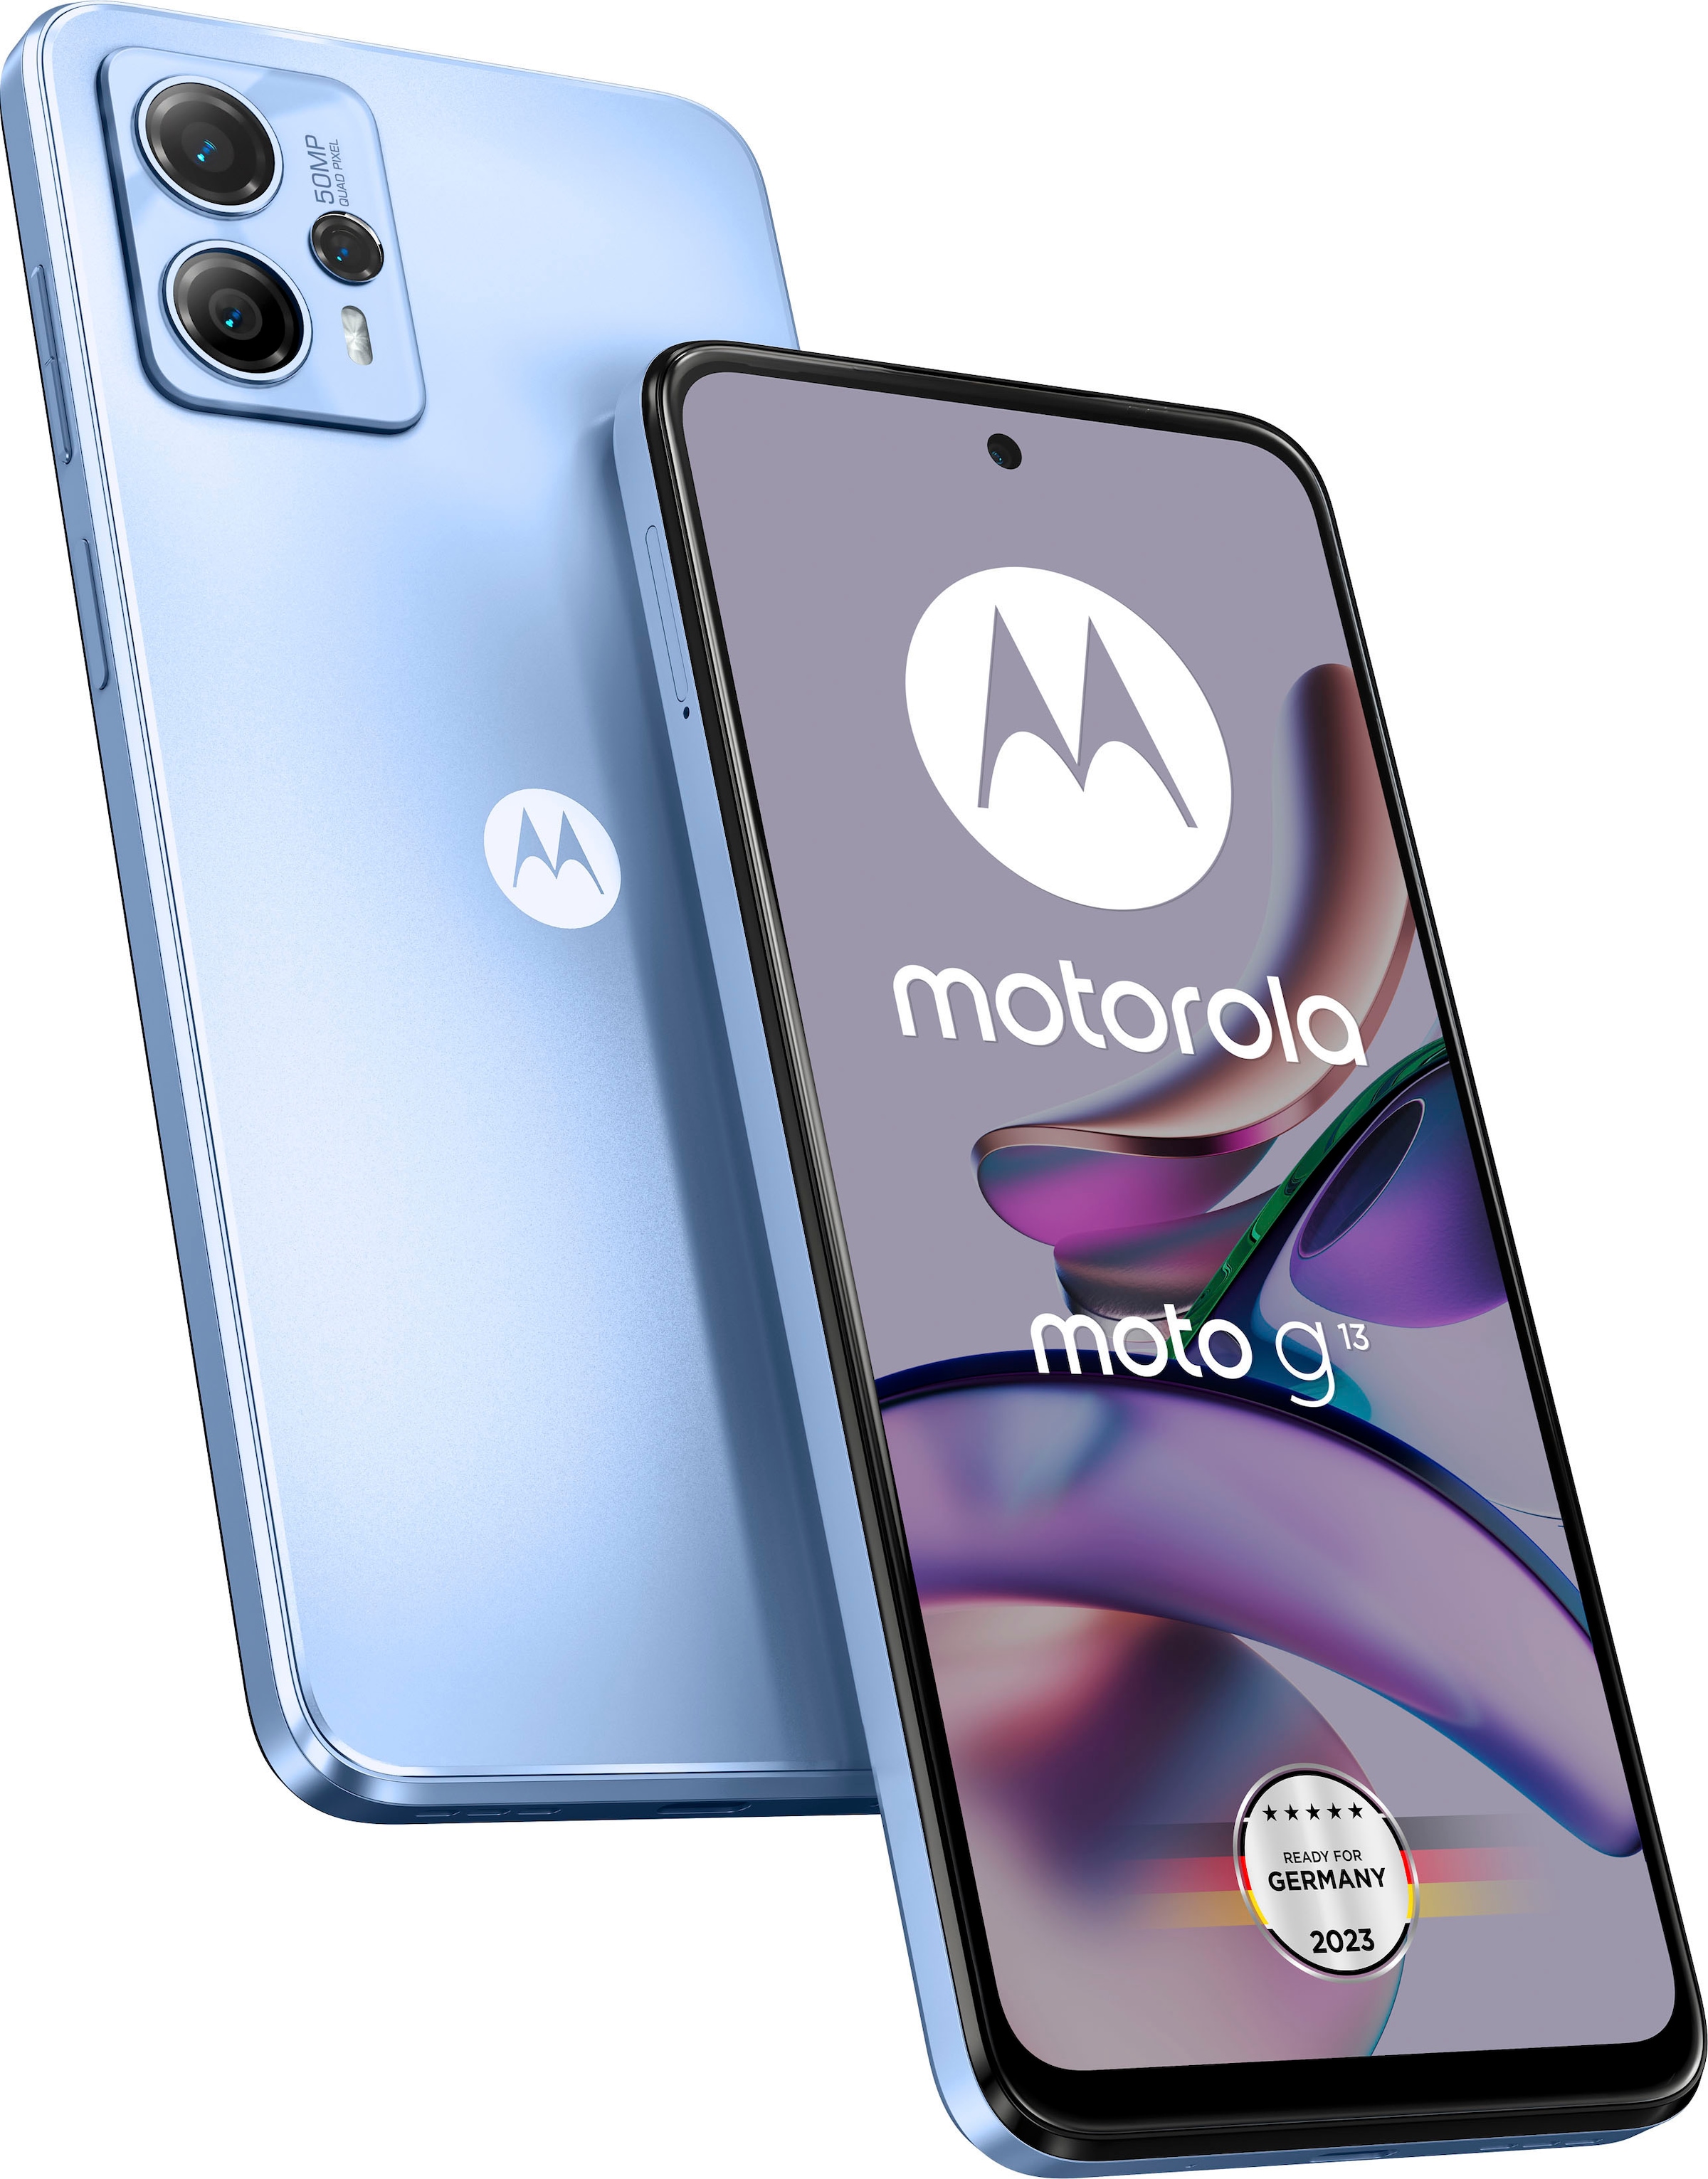 128 16,56 Motorola GB Smartphone cm/6,52 Kamera MP »g13«, online blue, Speicherplatz, kaufen Zoll, 50 lavender